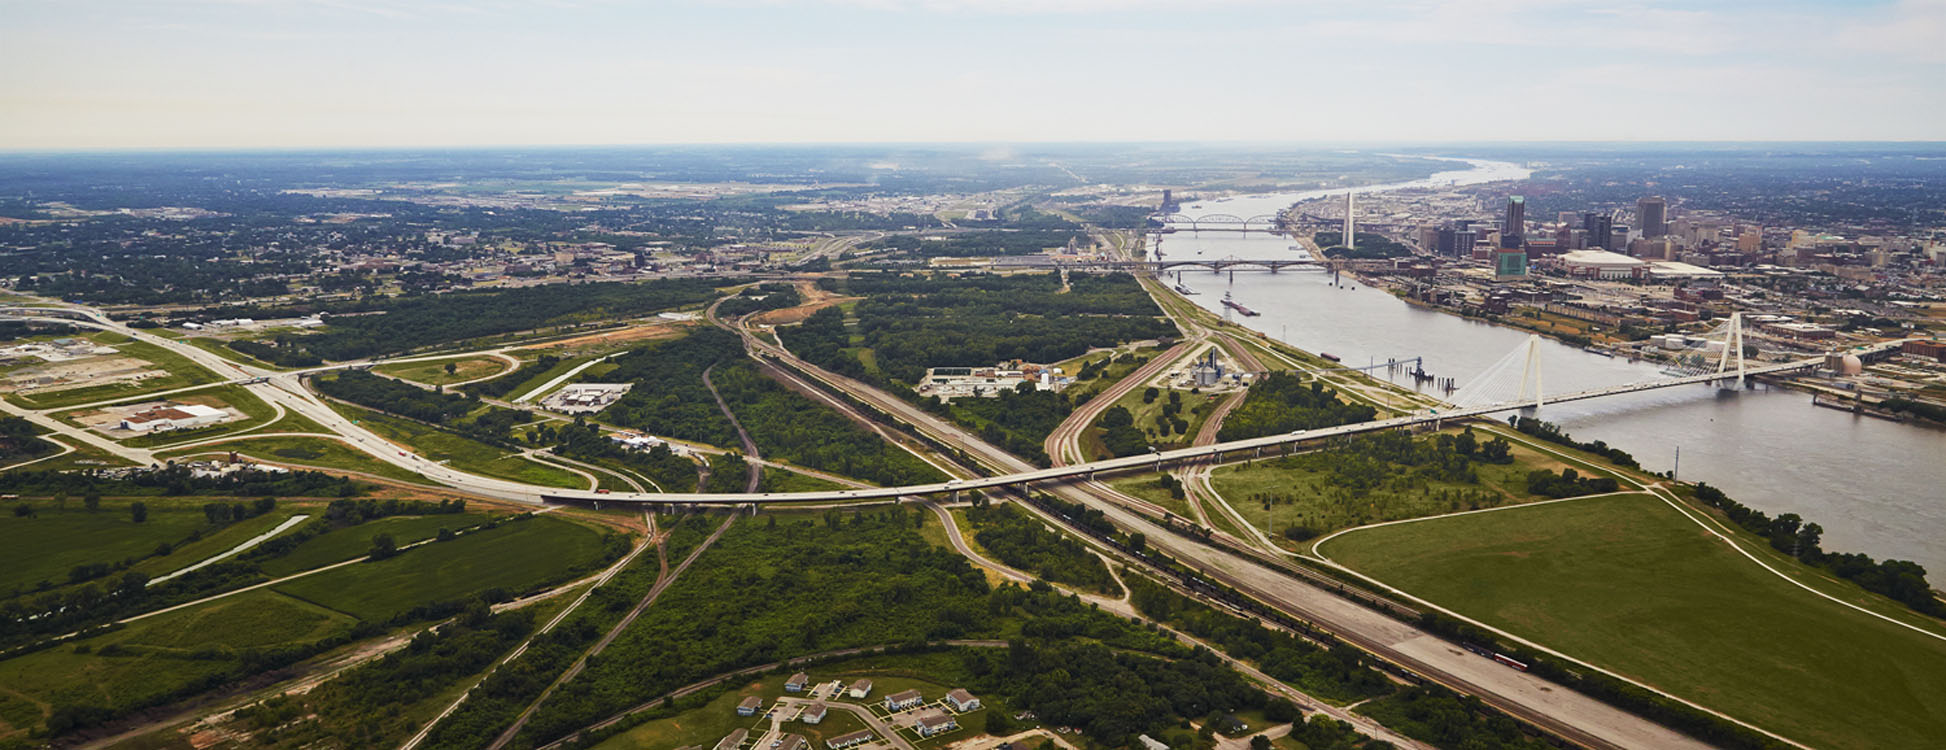 Une vue aérienne d'une ville et d'un pont.